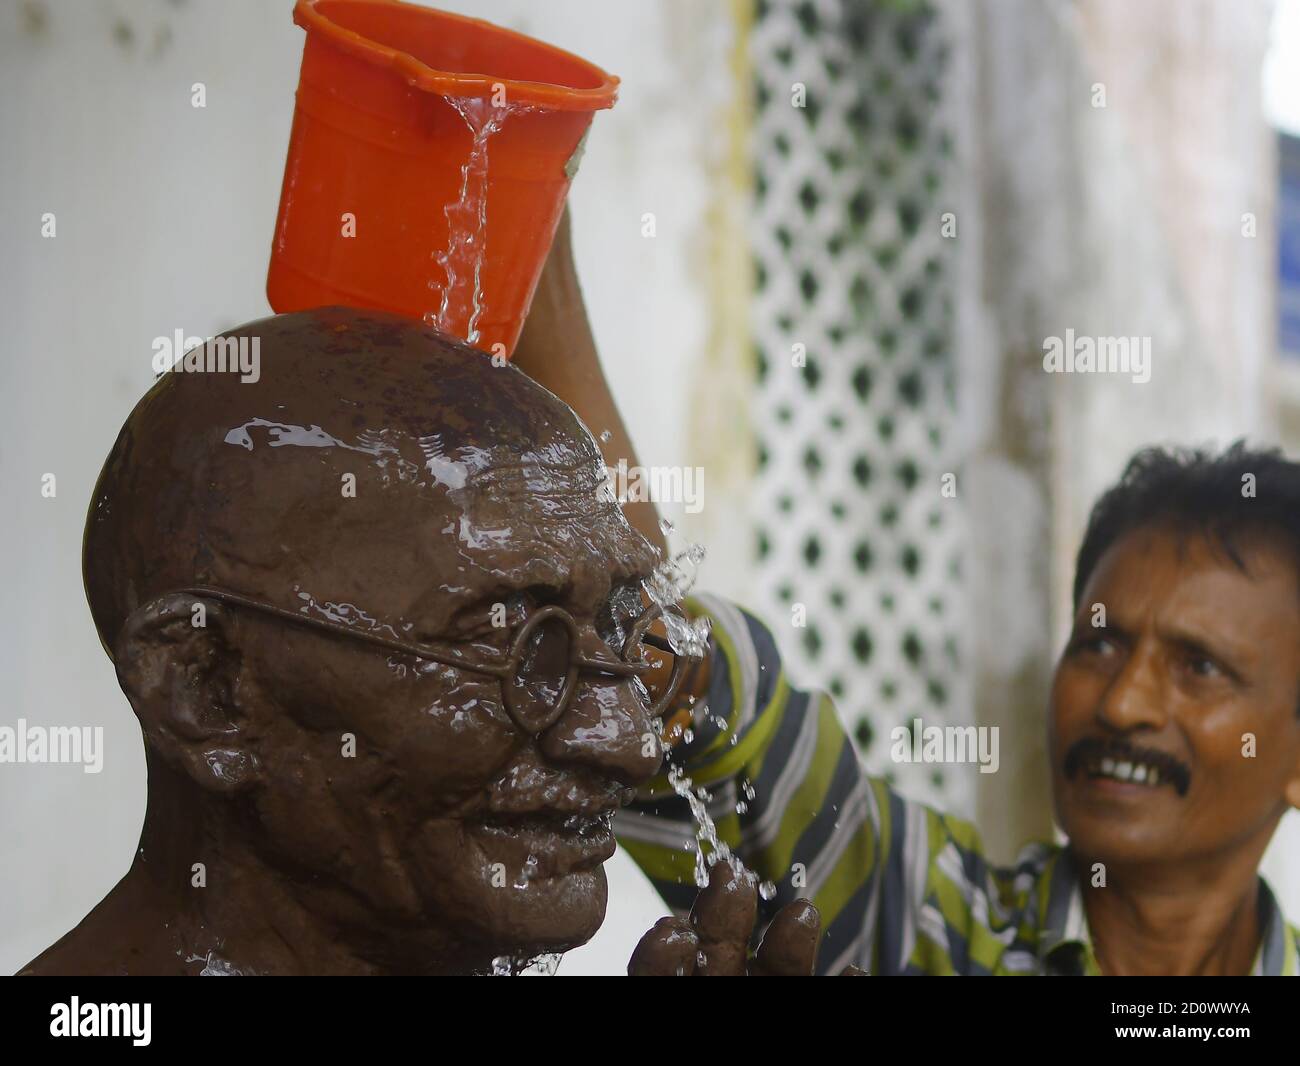 Ein Arbeiter wäscht und putzt die Statue von Mahatma Gandhi am Vorabend seines Geburtstages in Agartala. Tripura, Indien. Mahatma Gandhi war ein indischer Anwalt, antikolonialer Nationalist und politischer Ethiker, der gewaltfreien Widerstand einstellte, um die erfolgreiche Kampagne für Indiens Unabhängigkeit von der britischen Herrschaft zu führen, und wiederum Bewegungen für Bürgerrechte und Freiheit auf der ganzen Welt inspirierte. Stockfoto